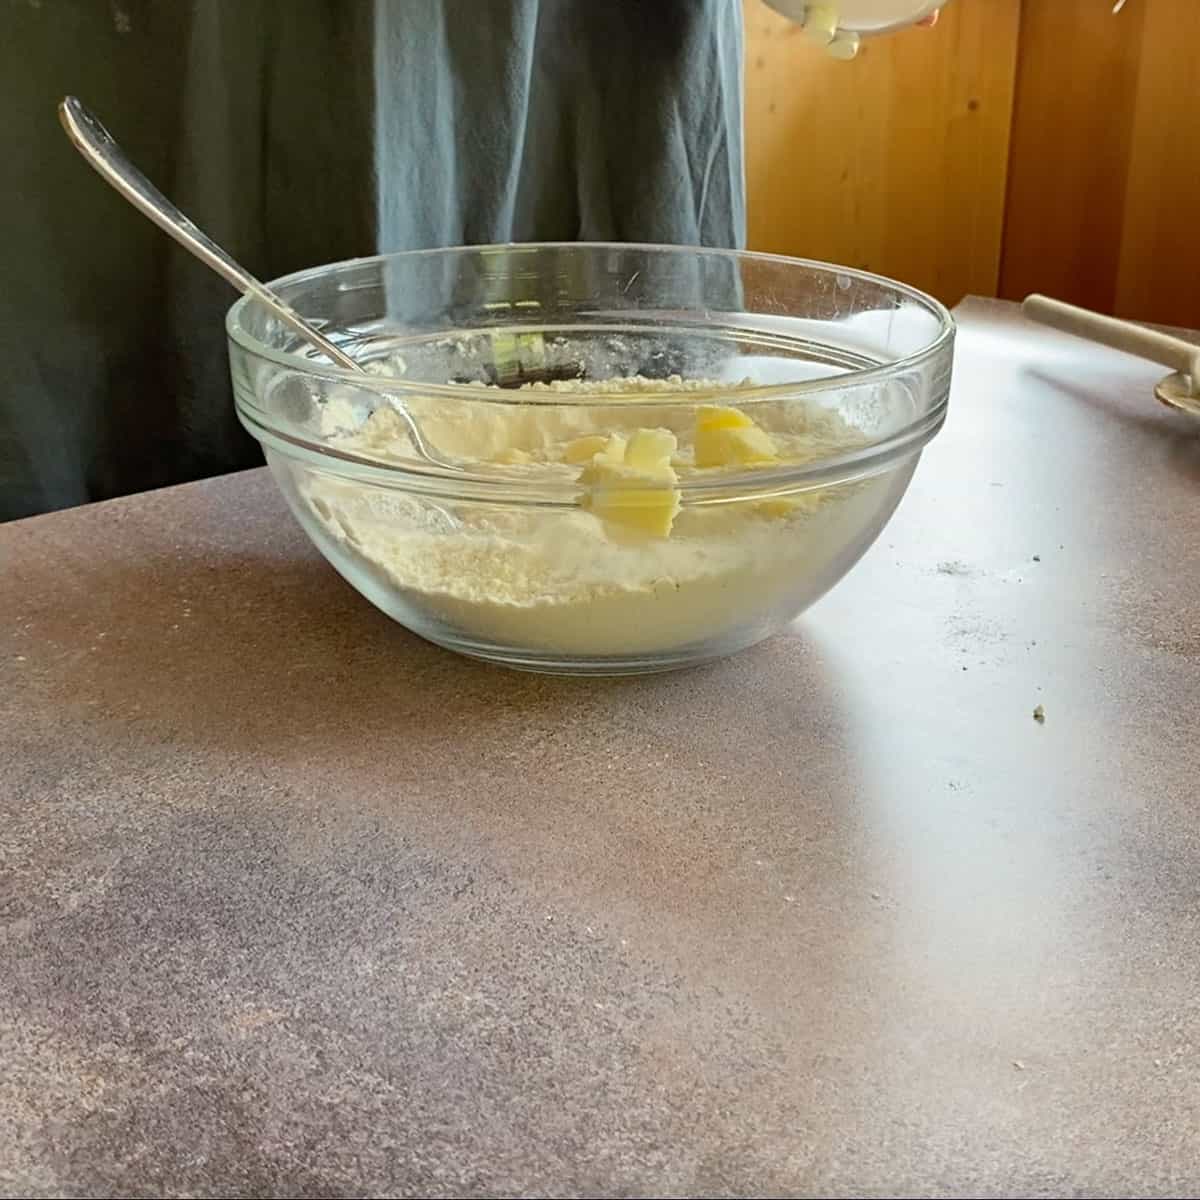 Process Cobbler 7 - adding butter